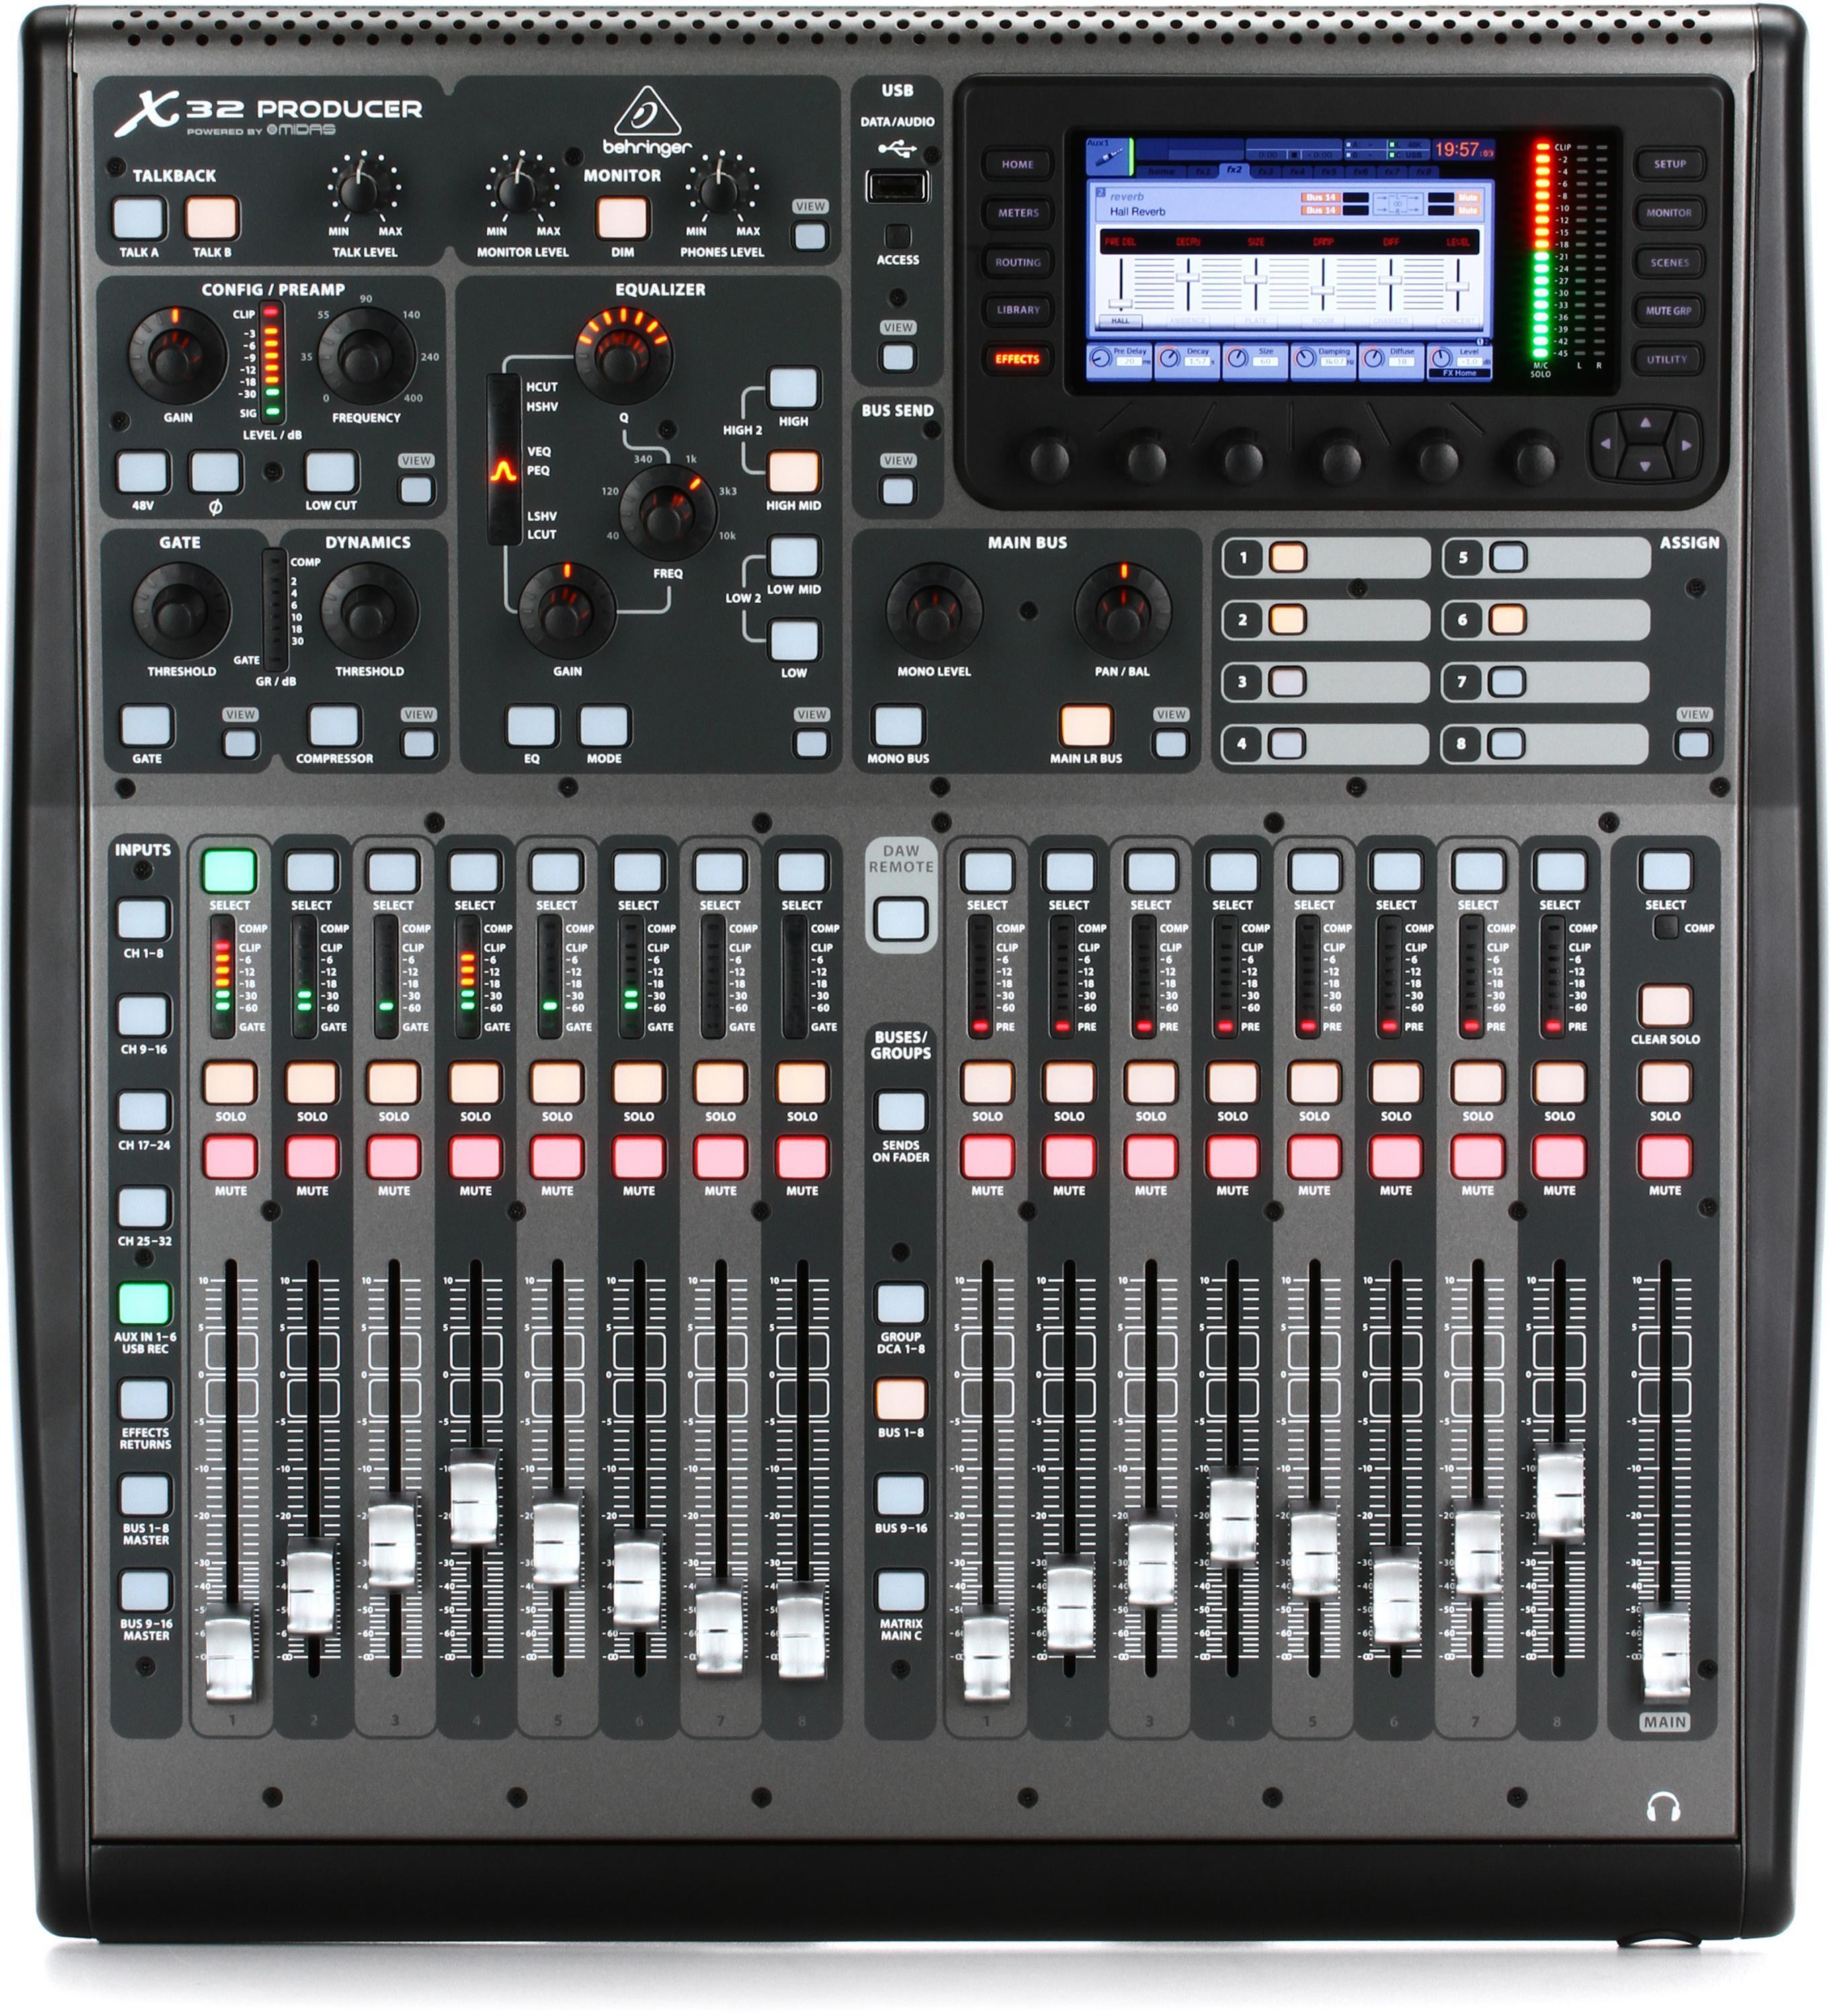 Bundled Item: Behringer X32 Producer 40-channel Digital Mixer